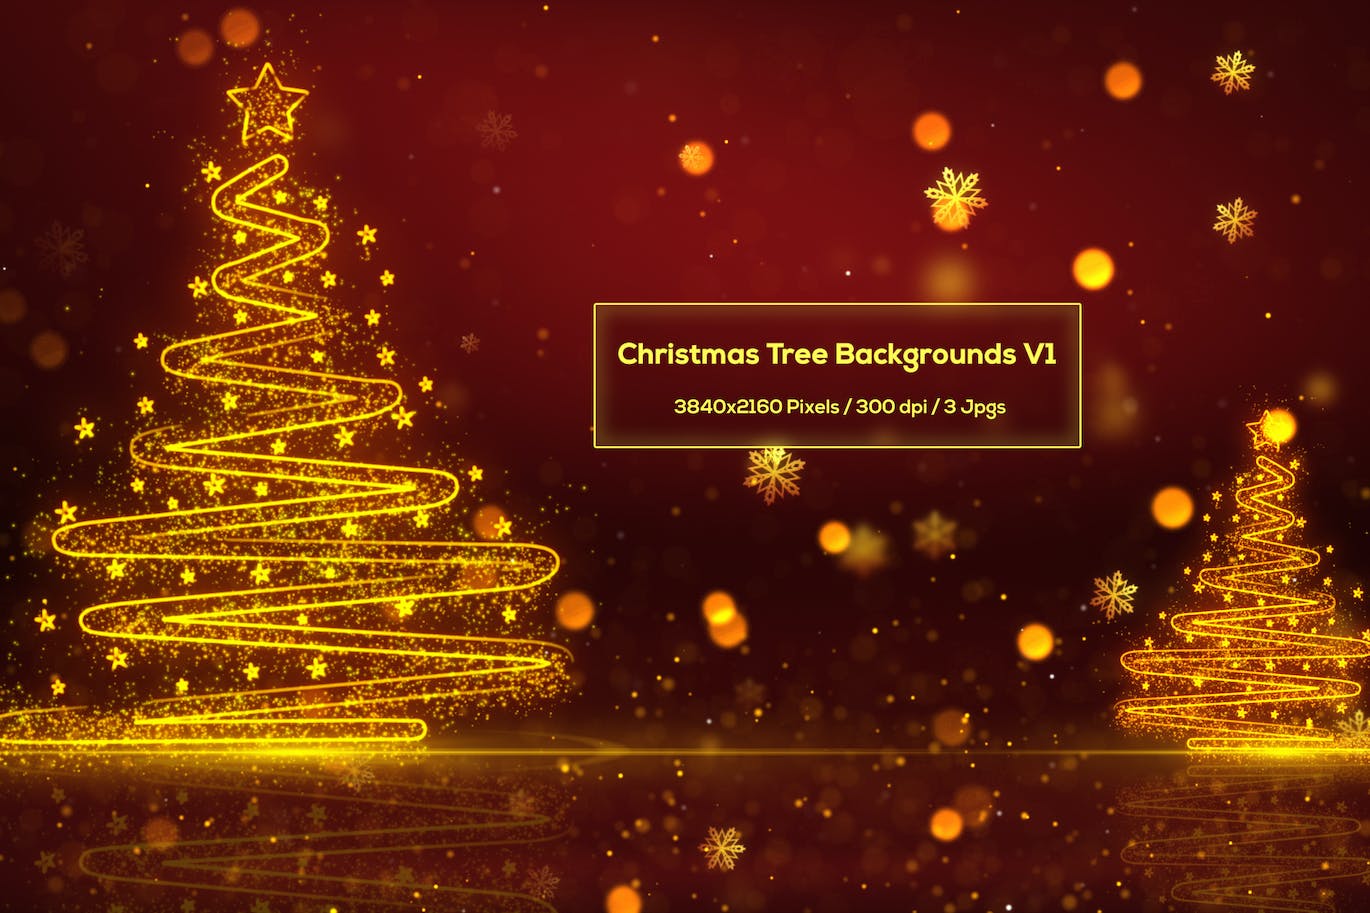 圣诞树背景 V1 (JPG)